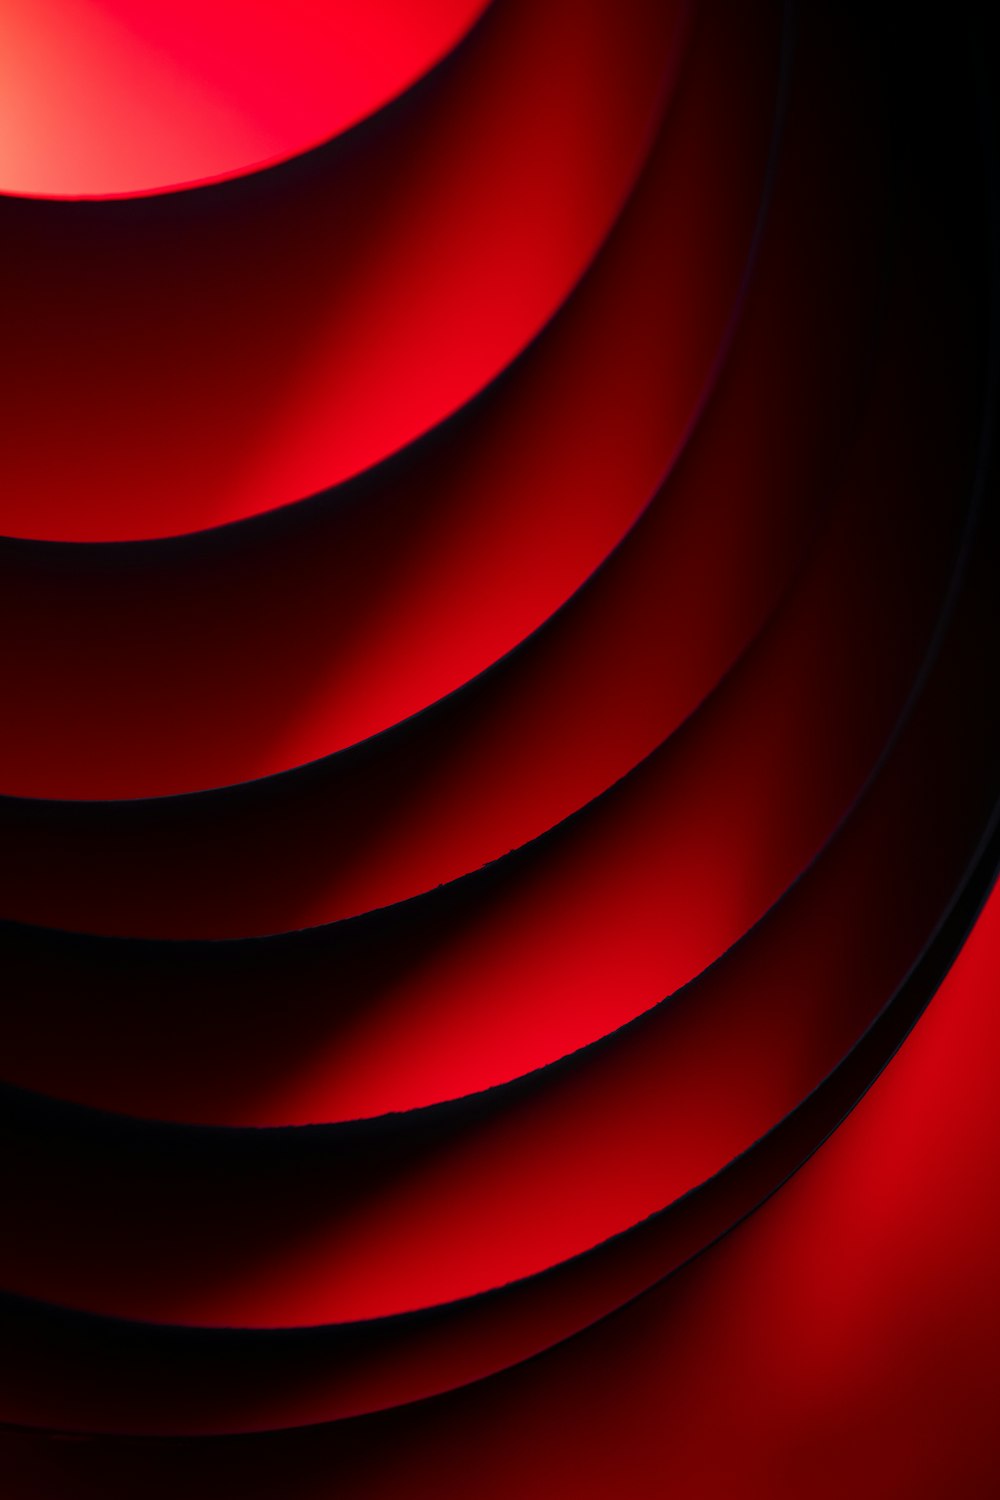 Hình ảnh đỏ đen tròn trịa là một sự lựa chọn hoàn hảo cho những ai yêu thích những thiết kế nghệ thuật hiện đại. Với sự kết hợp hai màu đen và đỏ, các bức tranh này sẽ mang lại vẻ đẹp độc đáo và khác biệt cho màn hình của bạn.